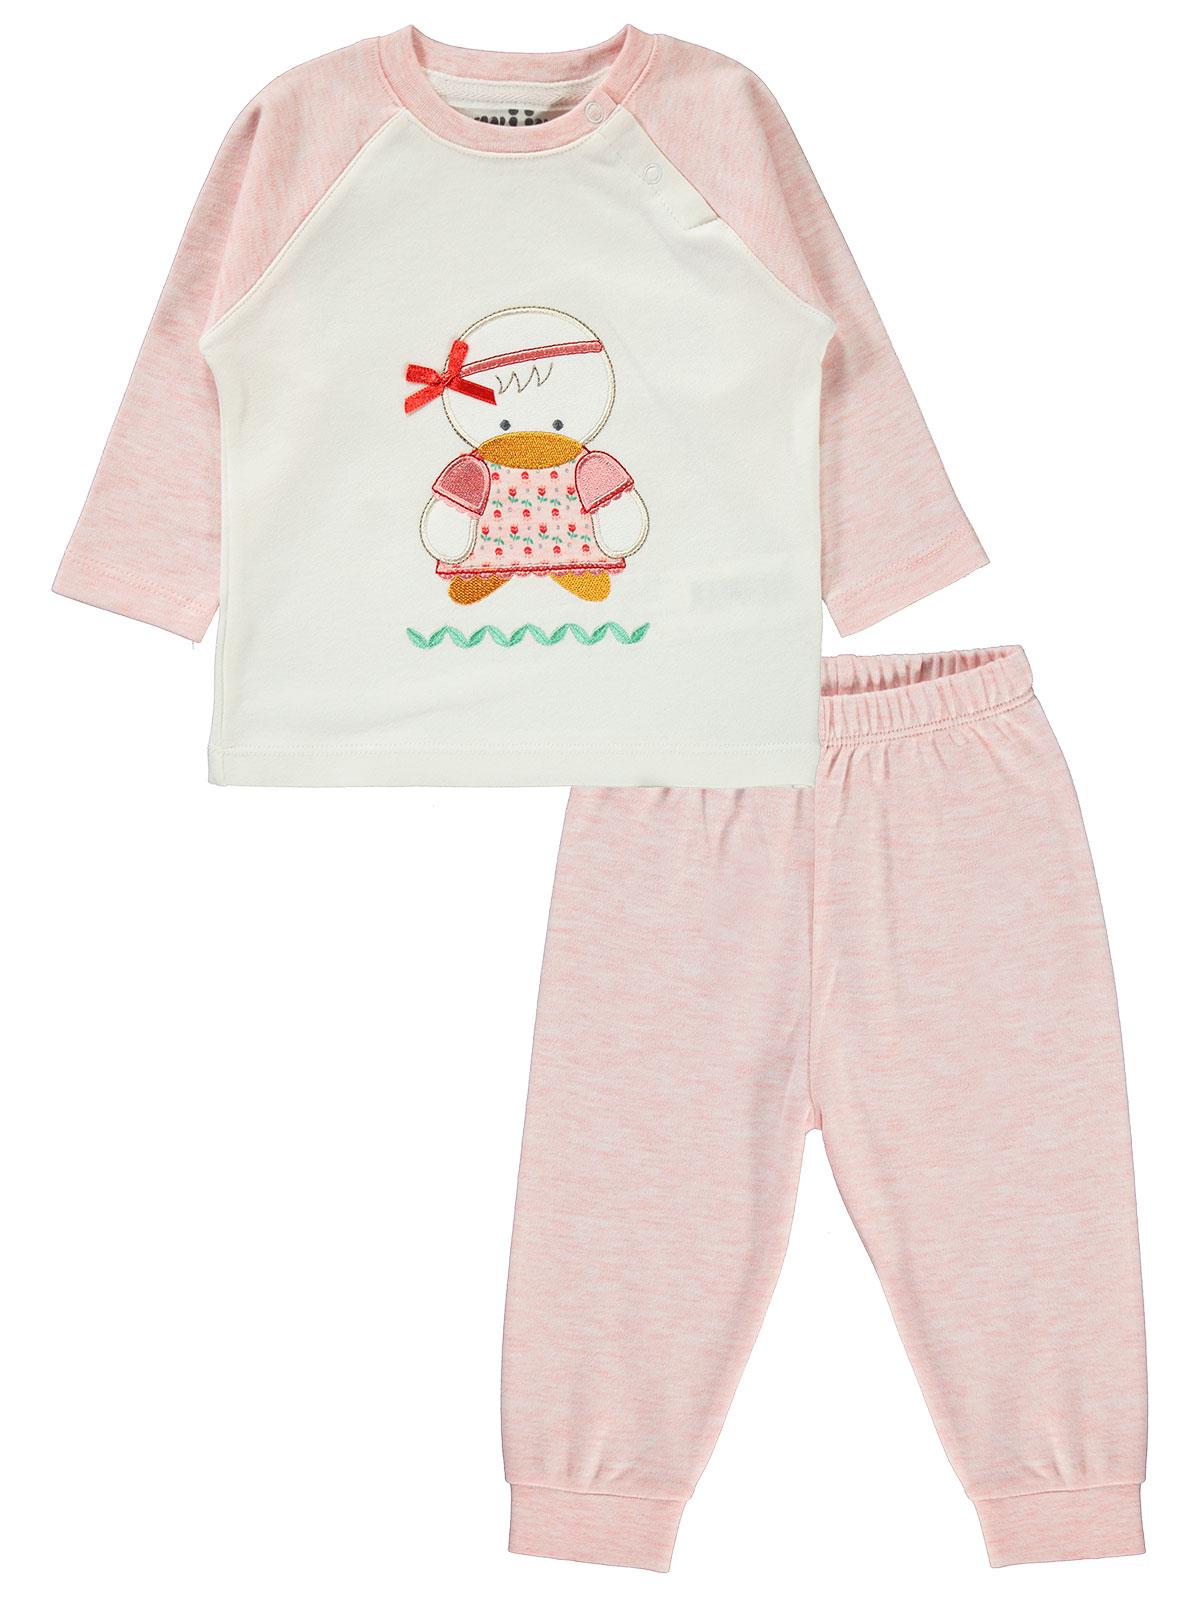 Kujju baby pige kæmmet bomulds pyjamas sæt 6-18 måneder lyserød farve 100%  bomuld baby krave langærmet